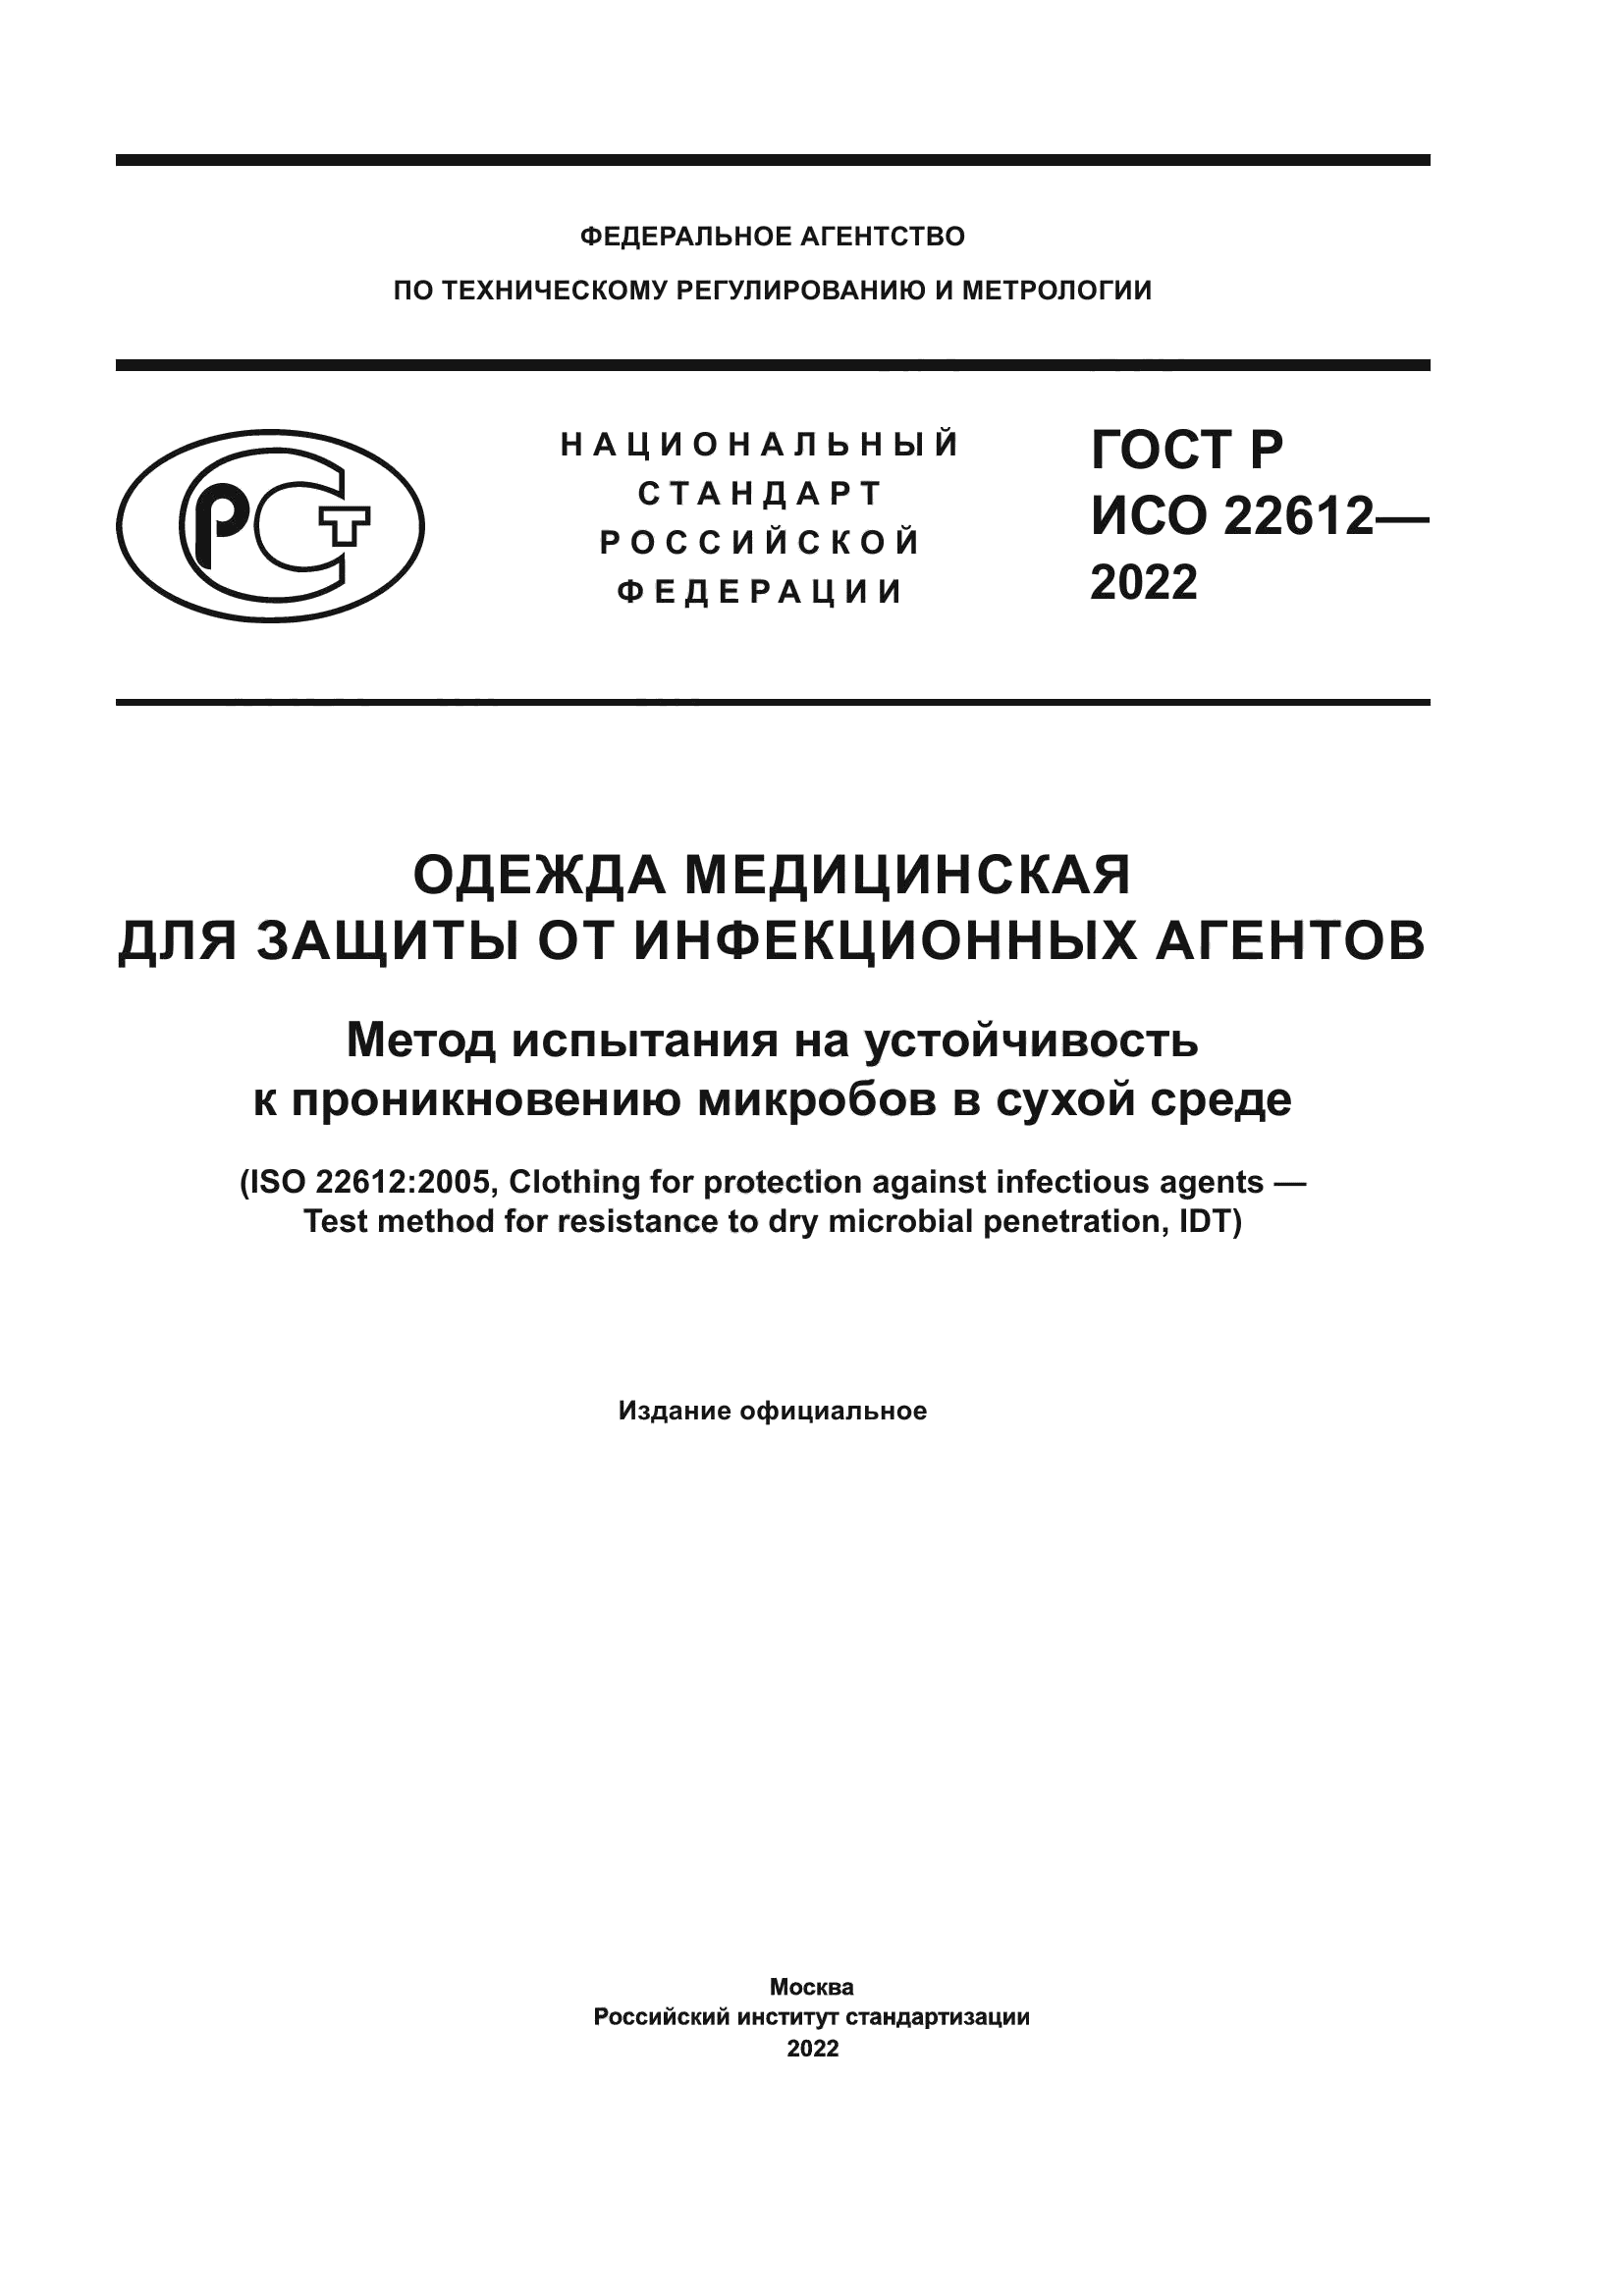 ГОСТ Р ИСО 22612-2022